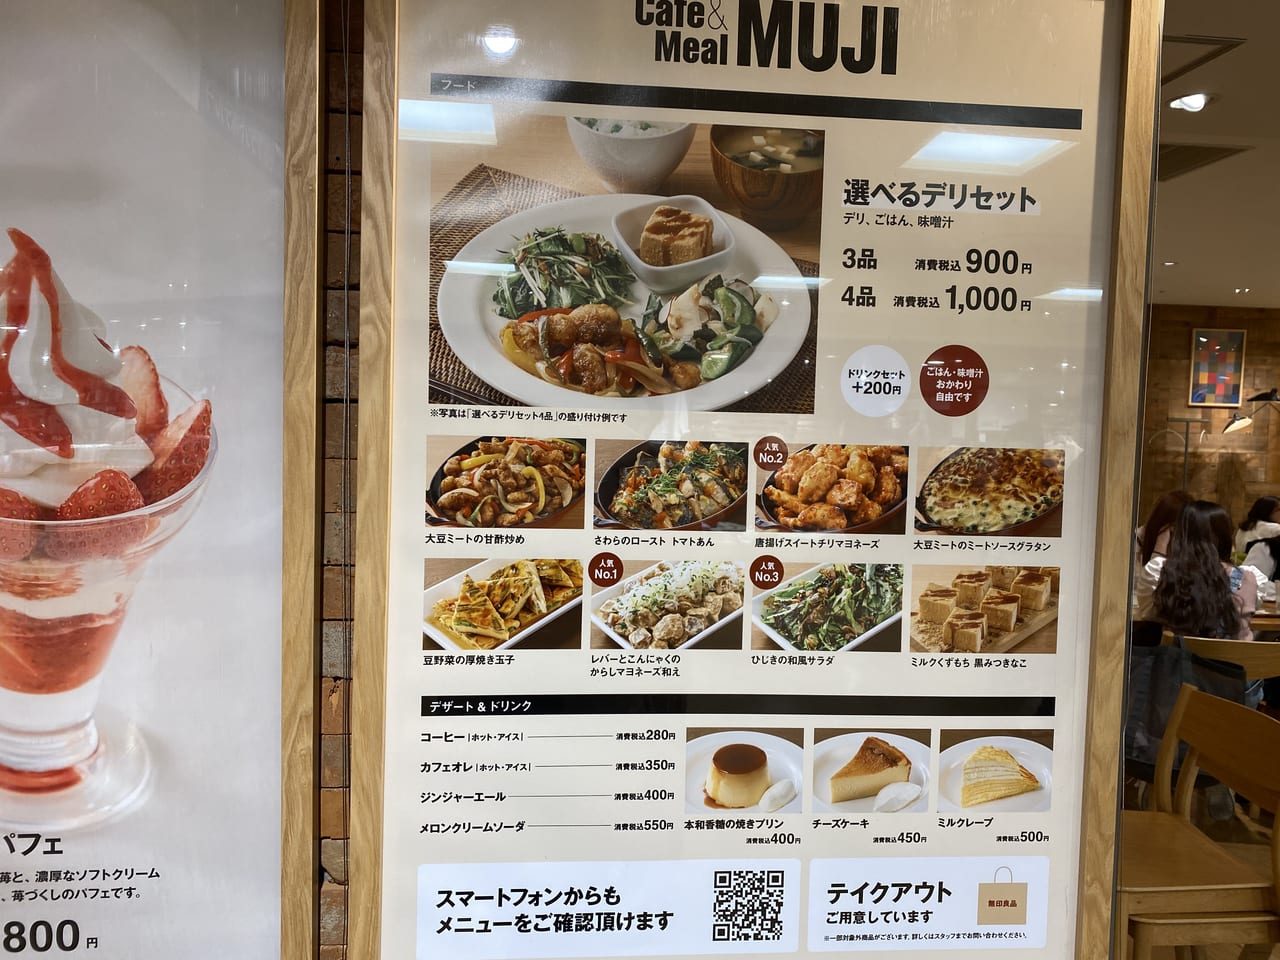 名古屋市中村区 無印良品 Cafe 話題の Cafe Meal Muji はご飯もデザートも充実 号外net 名古屋市西区 中村区